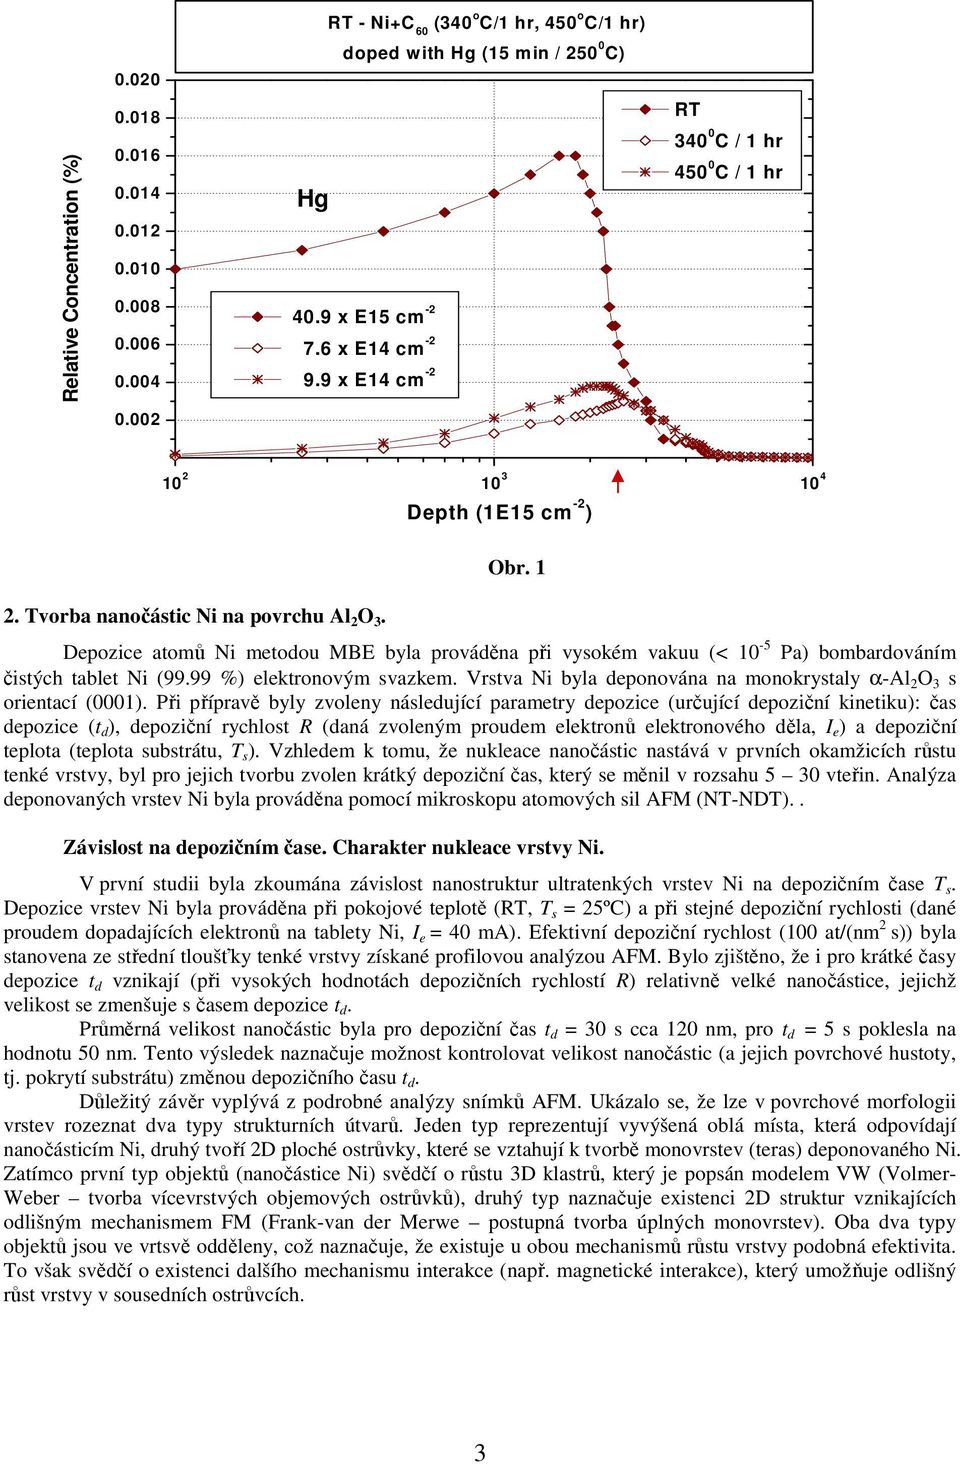 1 Depozice atomů Ni metodou MBE byla prováděna při vysokém vakuu (< 10-5 Pa) bombardováním čistých tablet Ni (99.99 %) elektronovým svazkem.